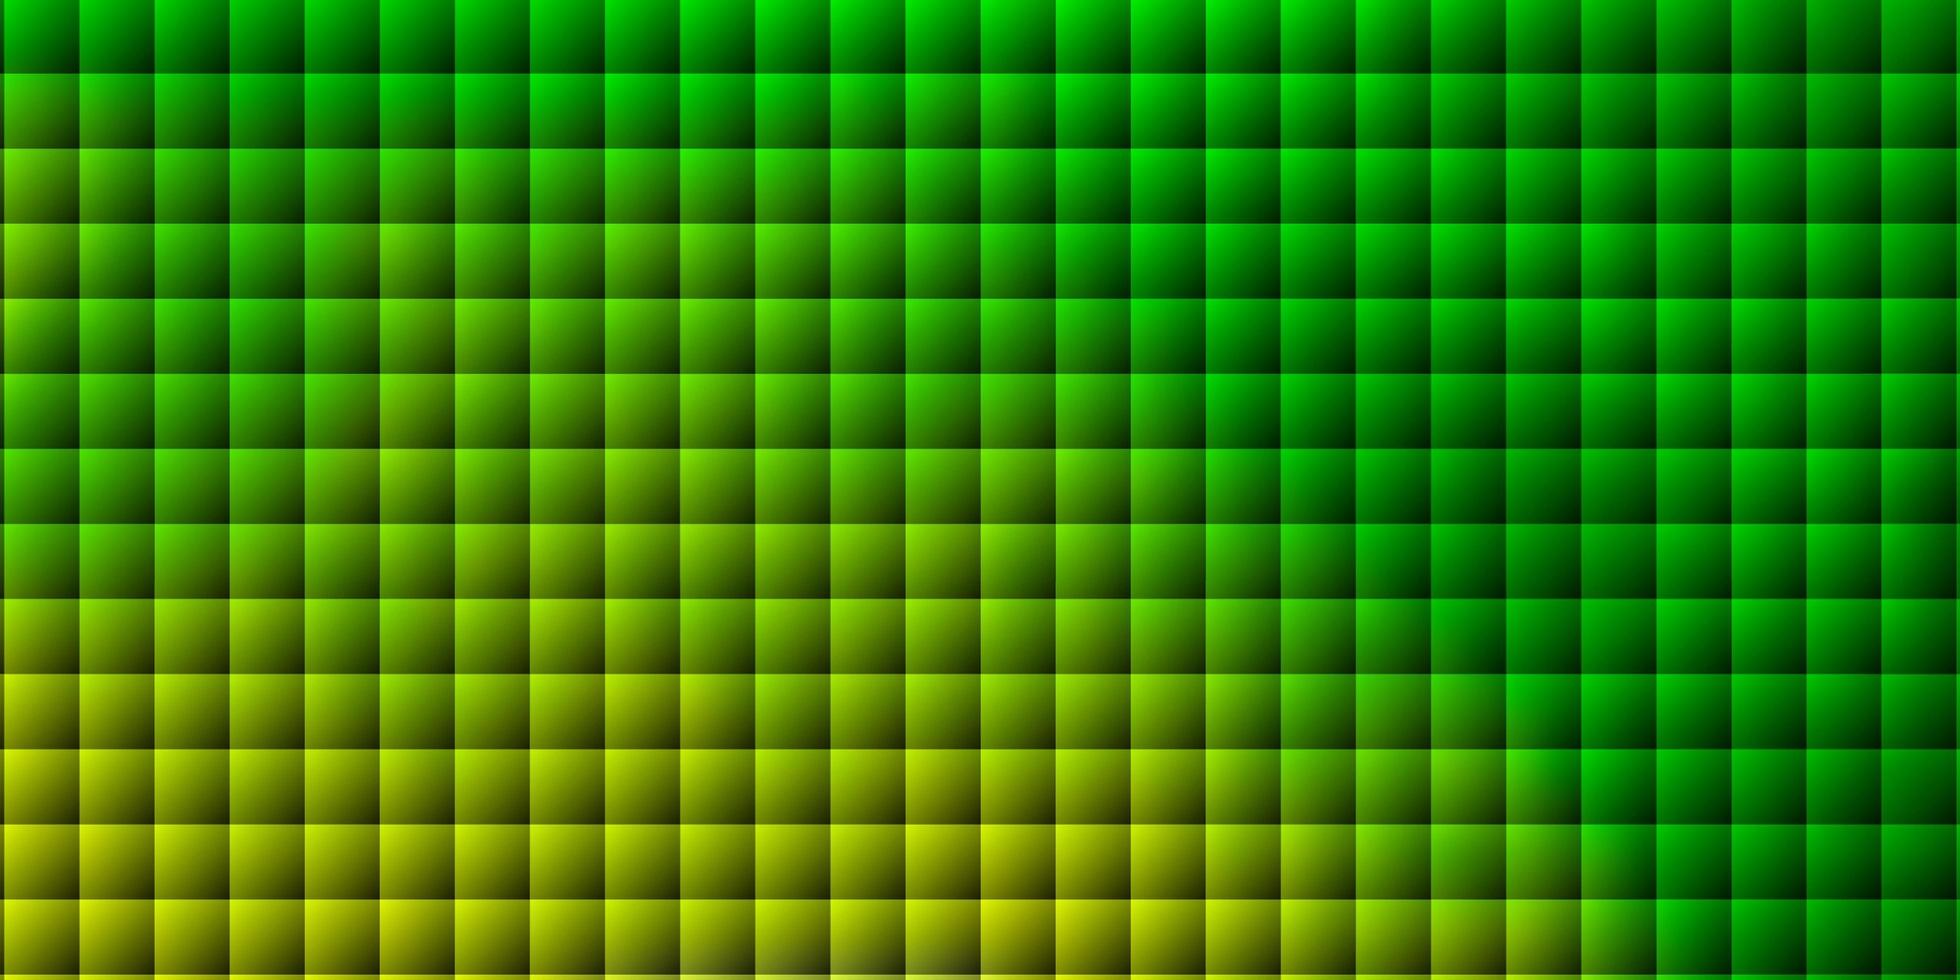 fond de vecteur vert clair avec des rectangles.